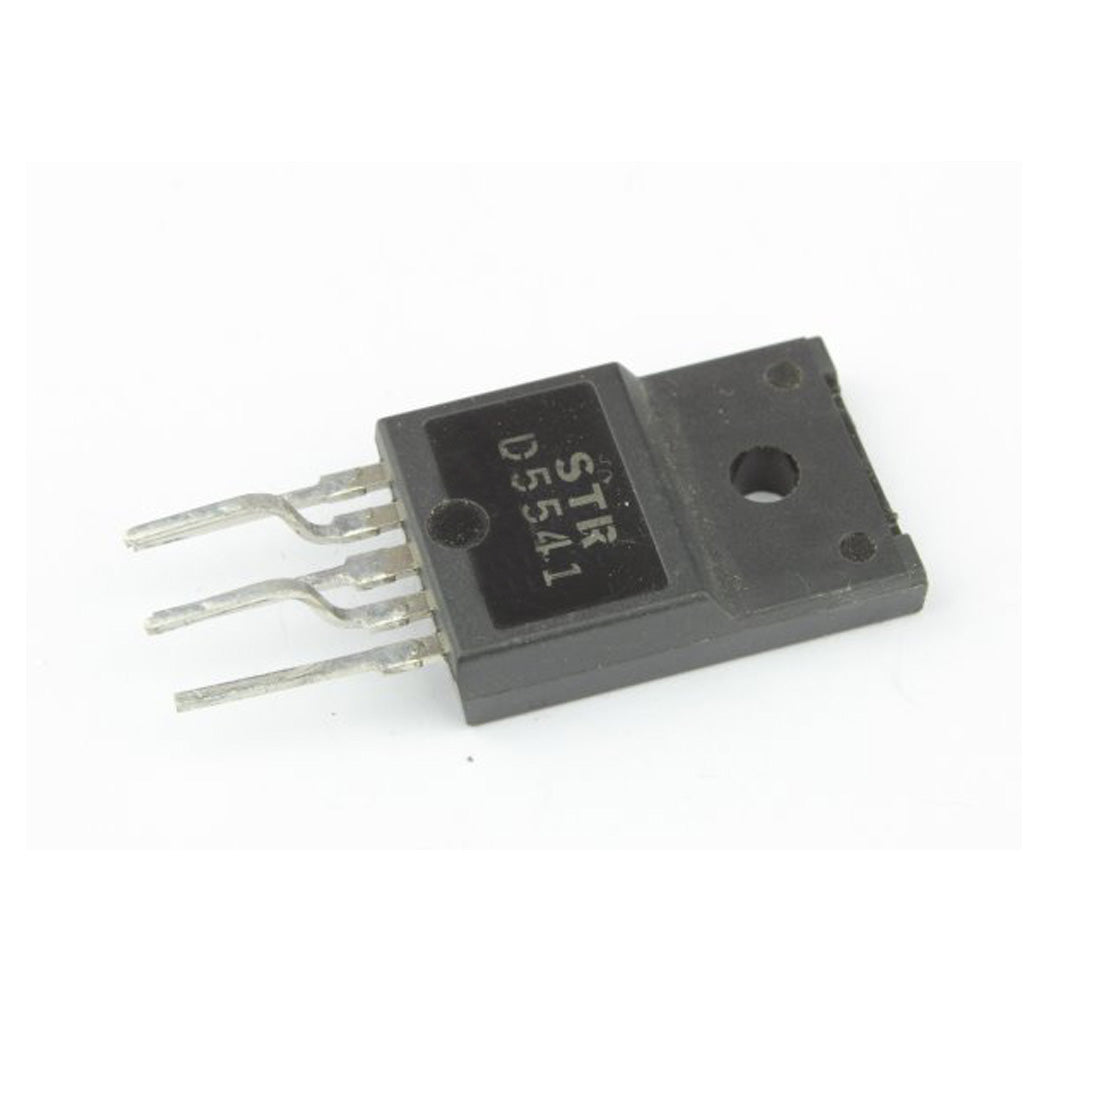 STRD5541 componente elettronico, circuito integrato, transistor, 5 contatti